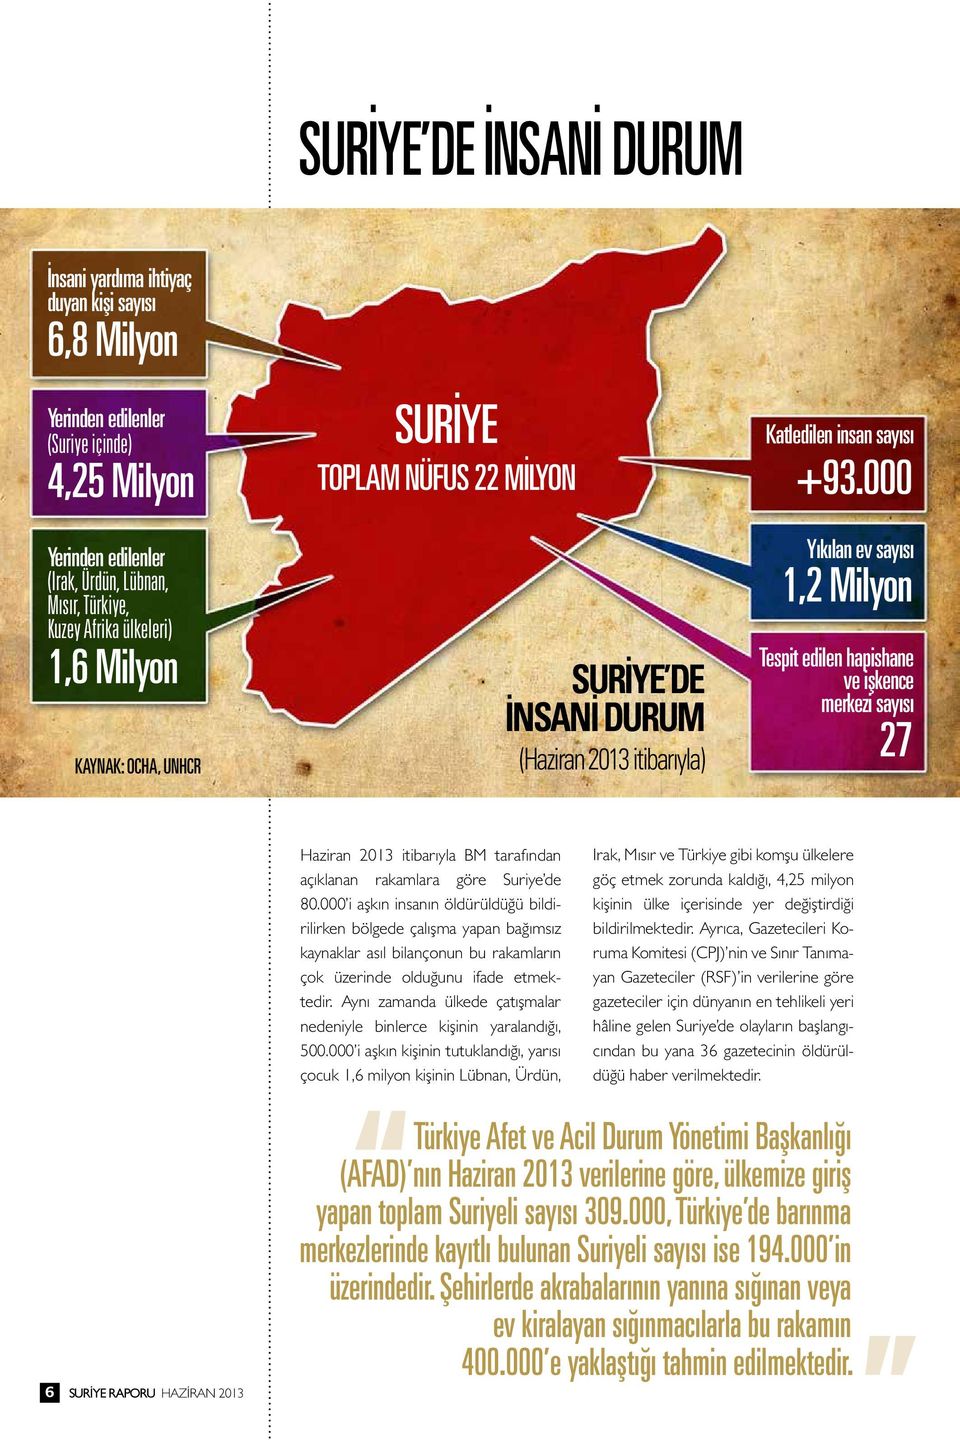 edilen hapishane ve işkence merkezi sayısı 27 Haziran 2013 itibarıyla BM tarafından açıklanan rakamlara göre Suriye de 80.